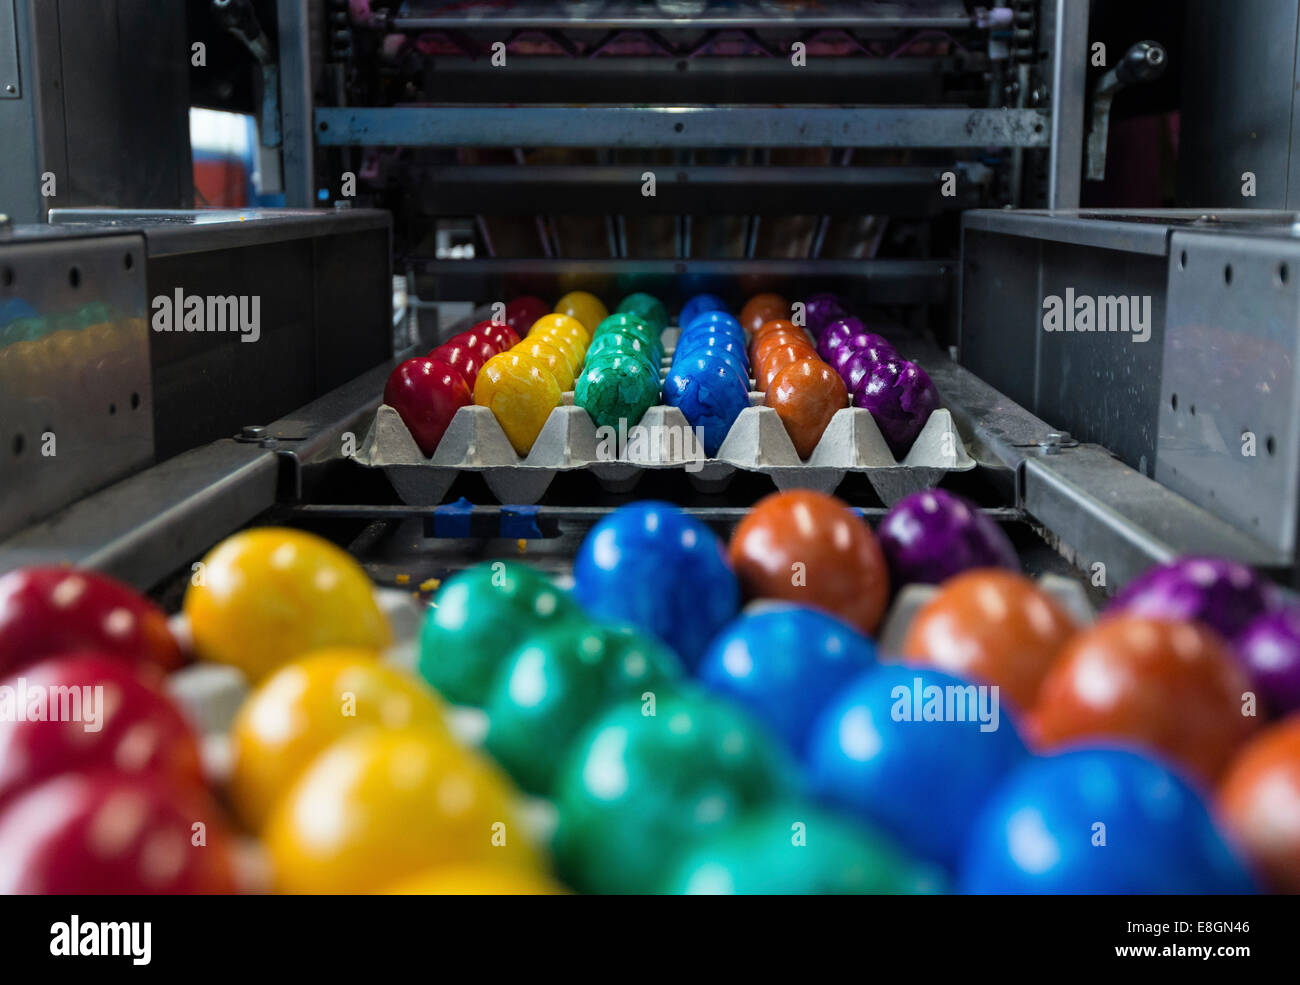 Les œufs de Pâques colorés sur une courroie de convoyeur, Beham, entreprise de teinture d'oeuf Thannhausen, Bayern, Allemagne Banque D'Images